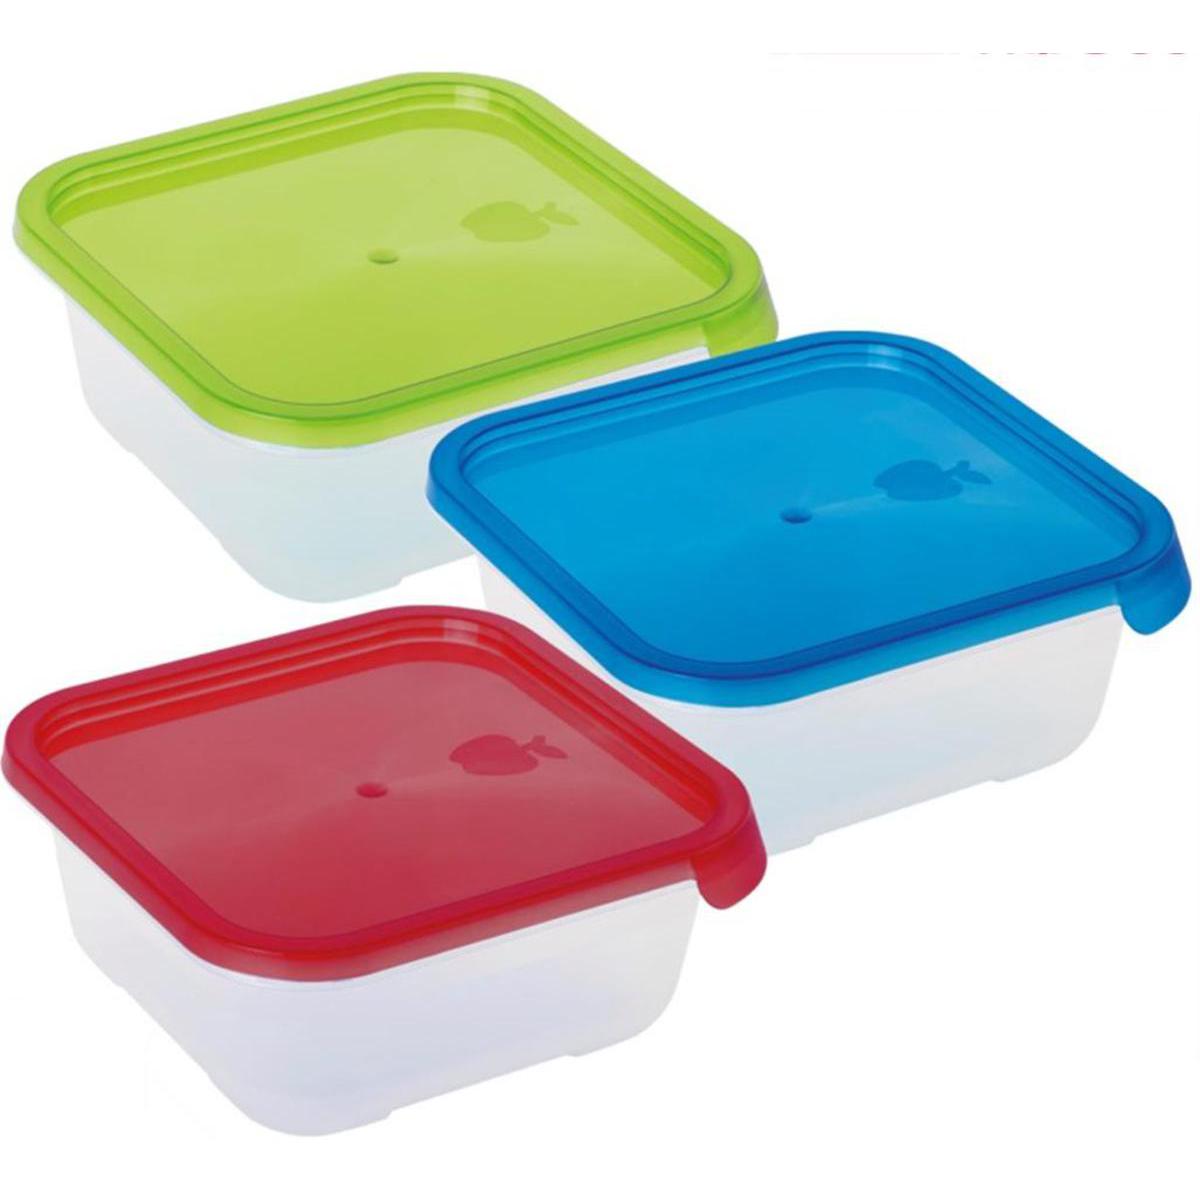 Boîte alimentaire carrée - Plastique - 16 x 16 x 5,8 cm - Vert, bleu, rouge